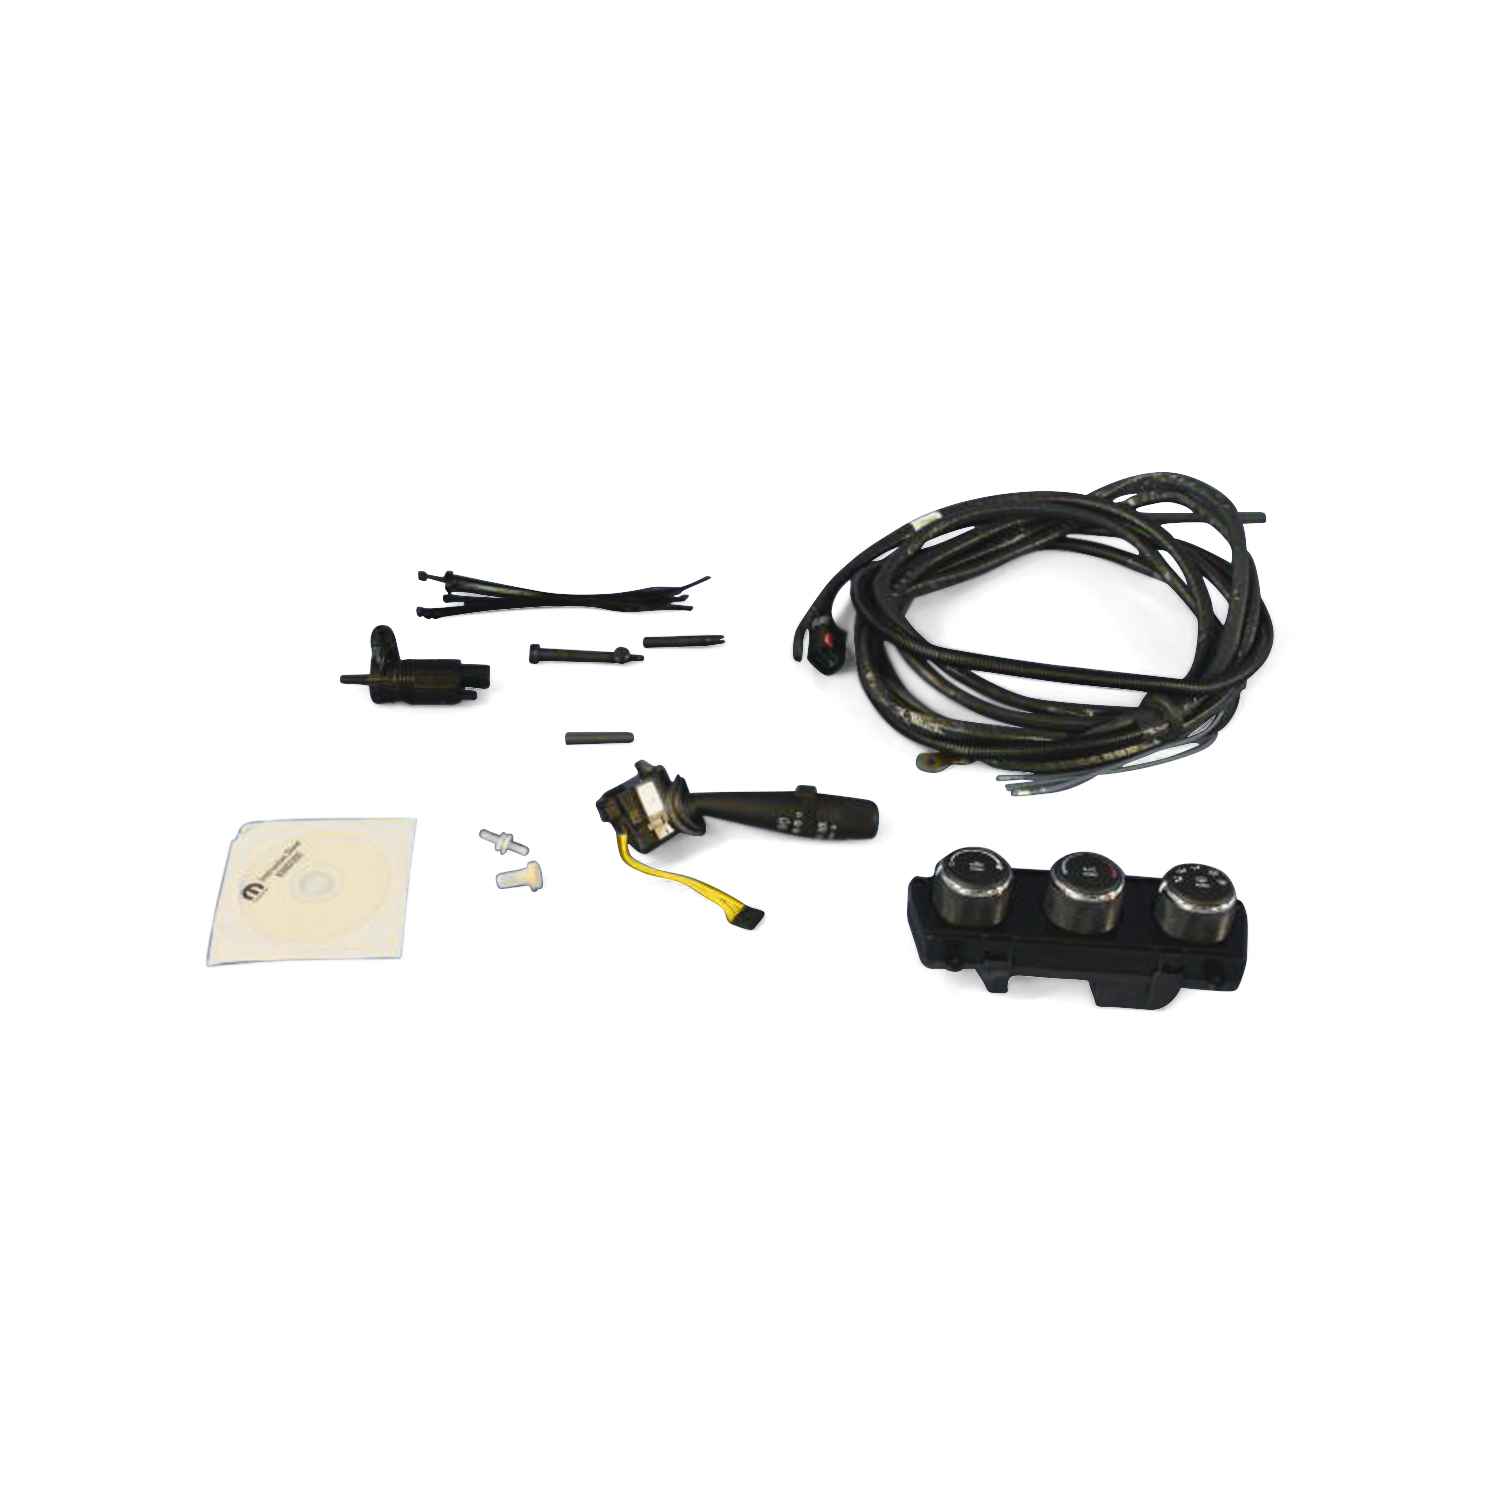 Hardtop wiring kit